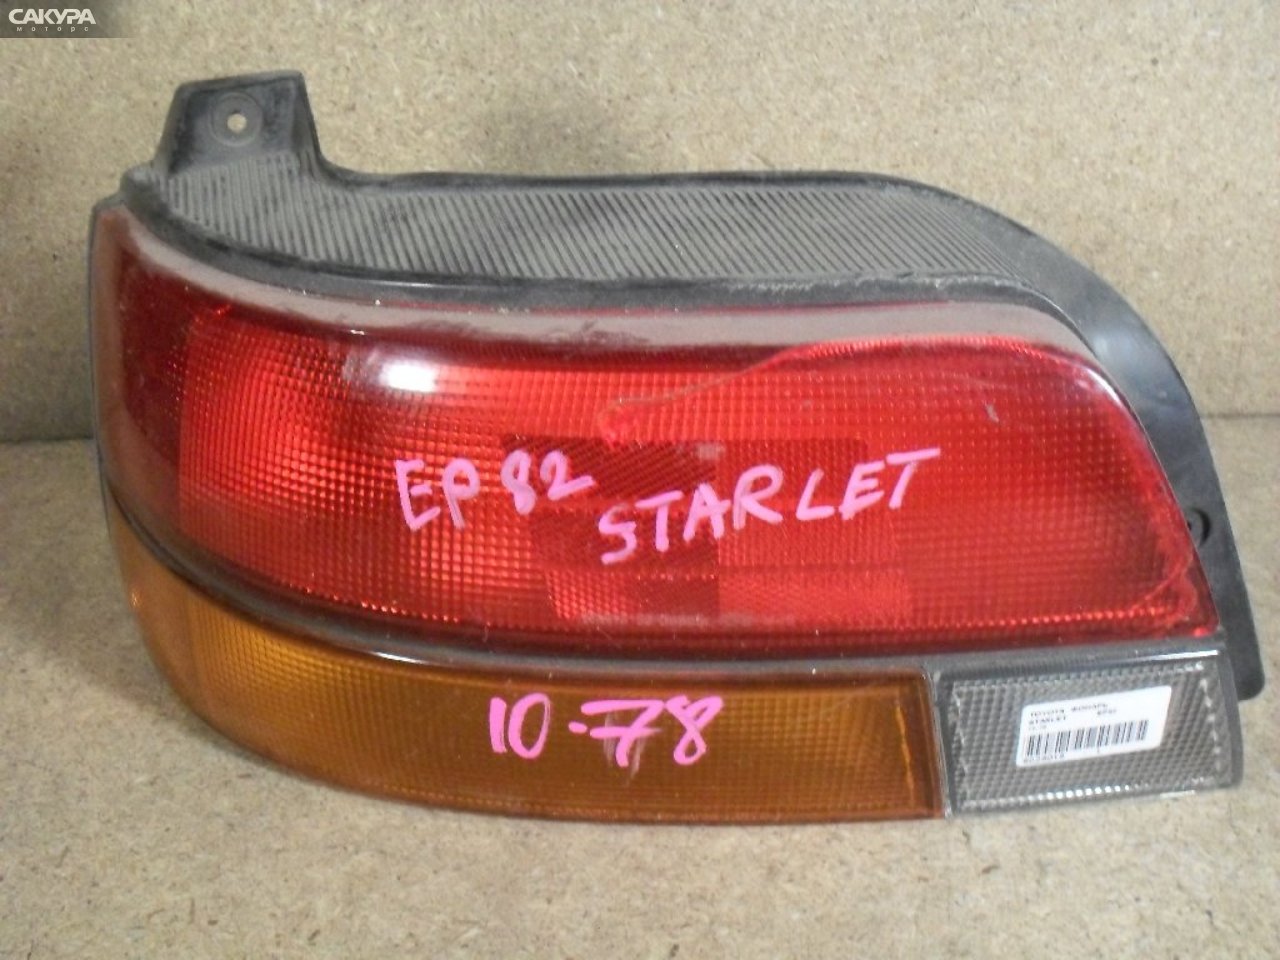 Фонарь стоп-сигнала левый Toyota Starlet EP82 10-78: купить в Сакура Абакан.